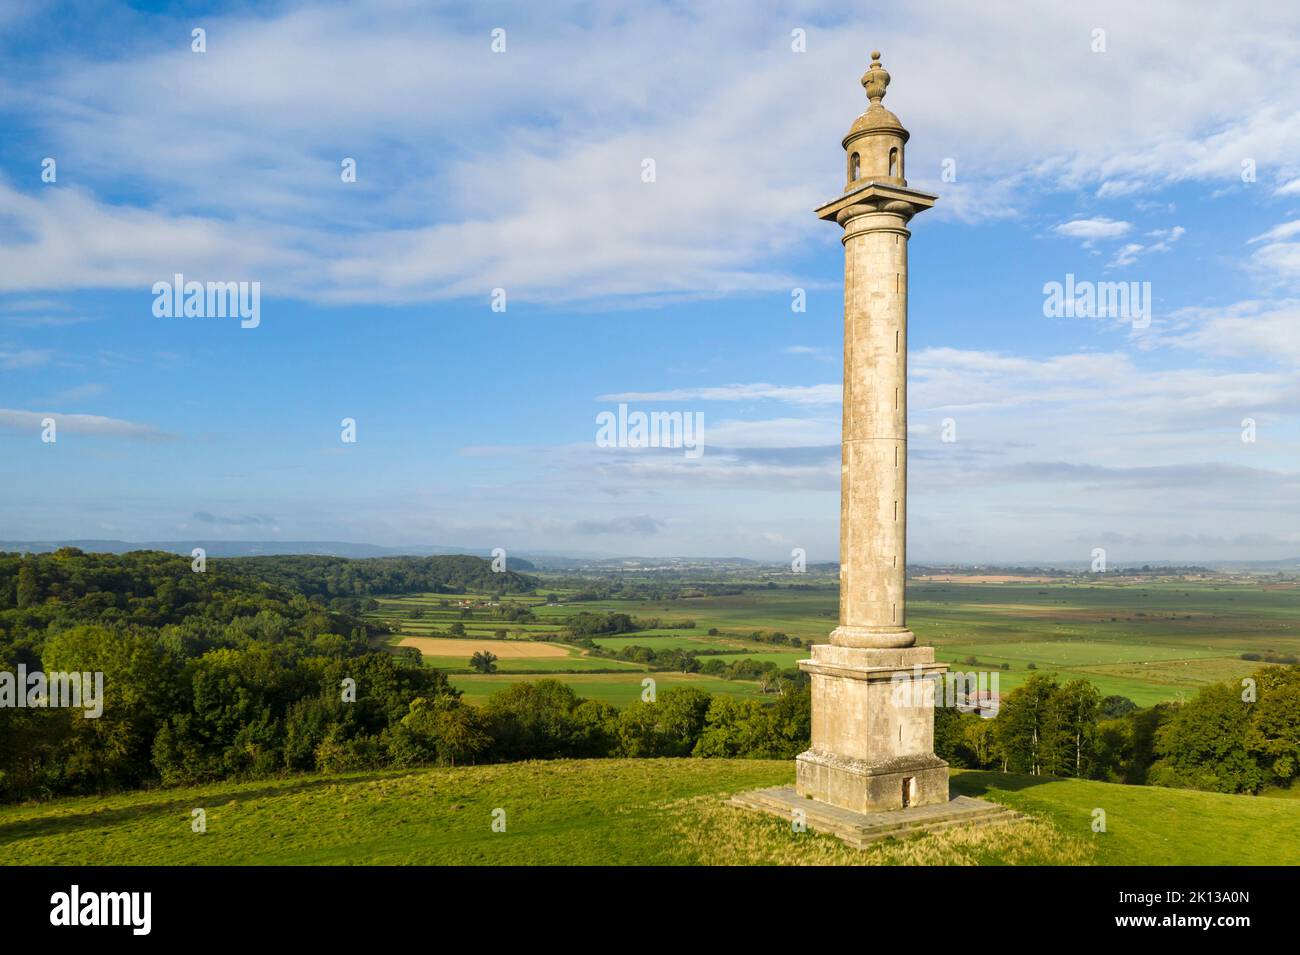 Le monument Burton Pynsent près du village de Curry Rivel, Somerset, Angleterre, Royaume-Uni, Europe Banque D'Images